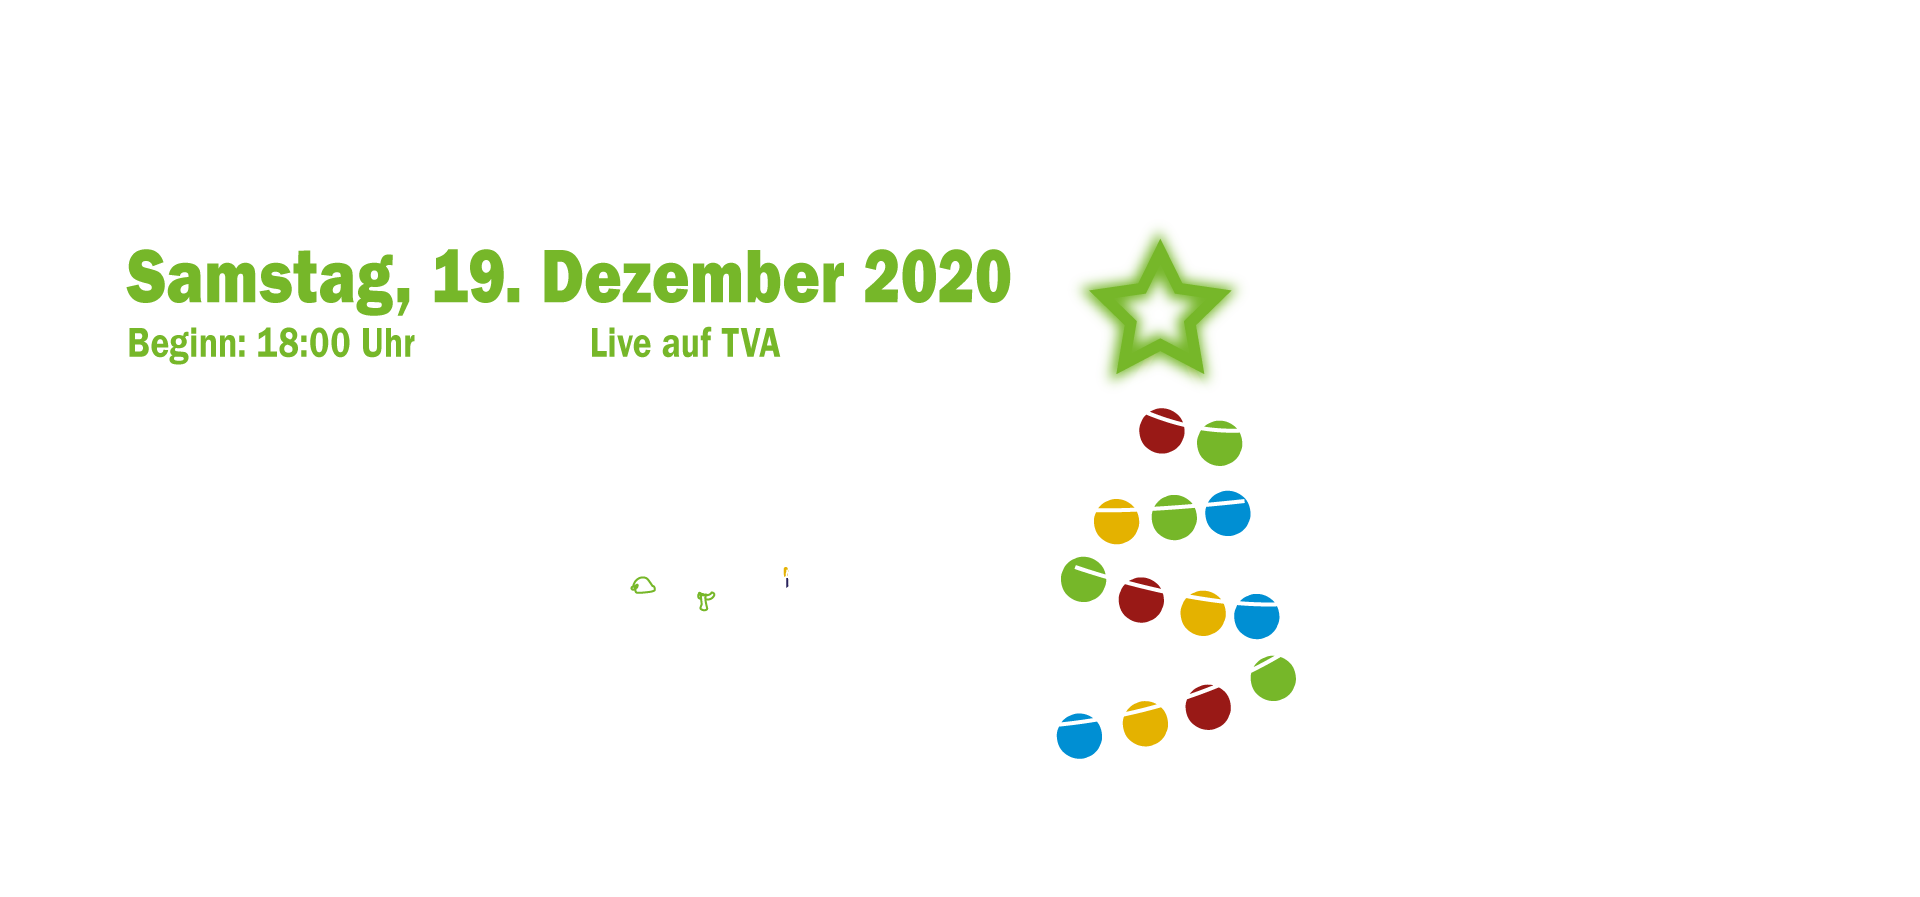 Weihnachtssingen Regensburg